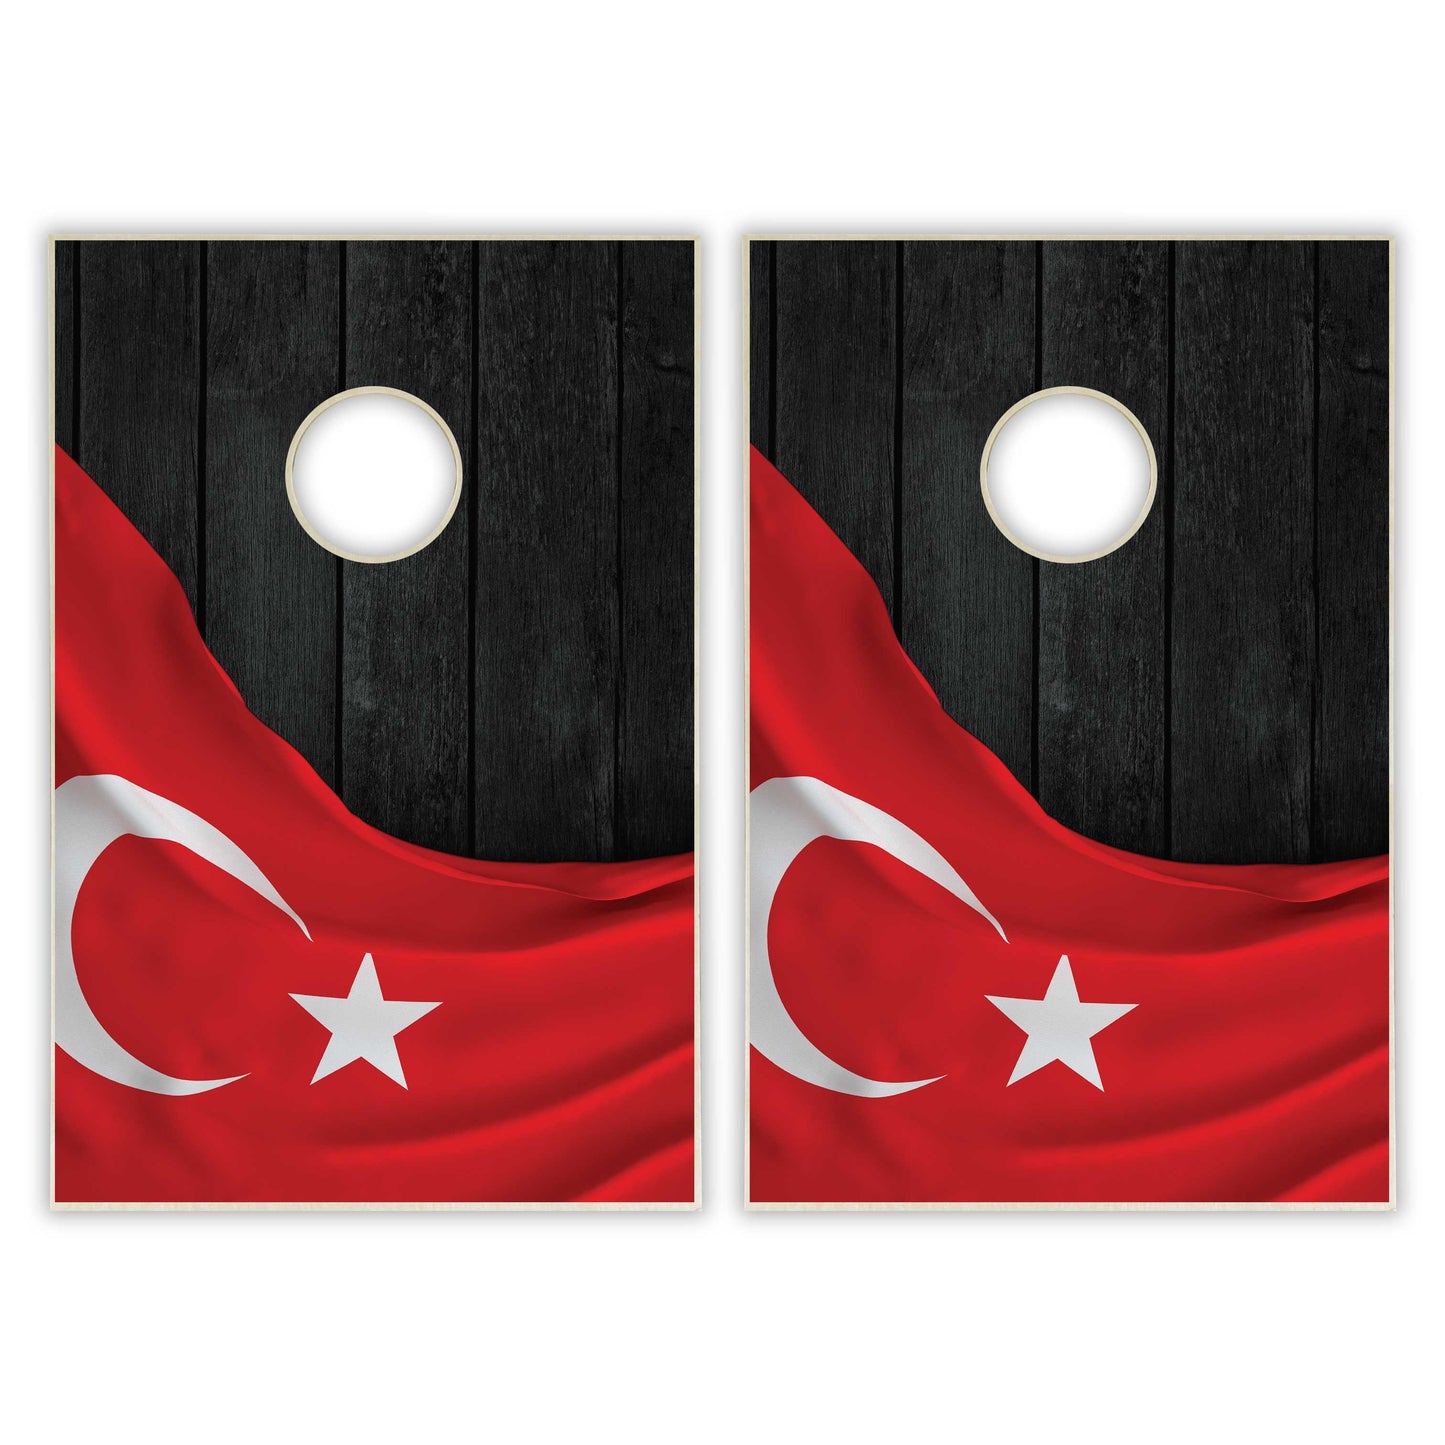 Turkey Flag Tailgate Cornhole Set - Black Wood